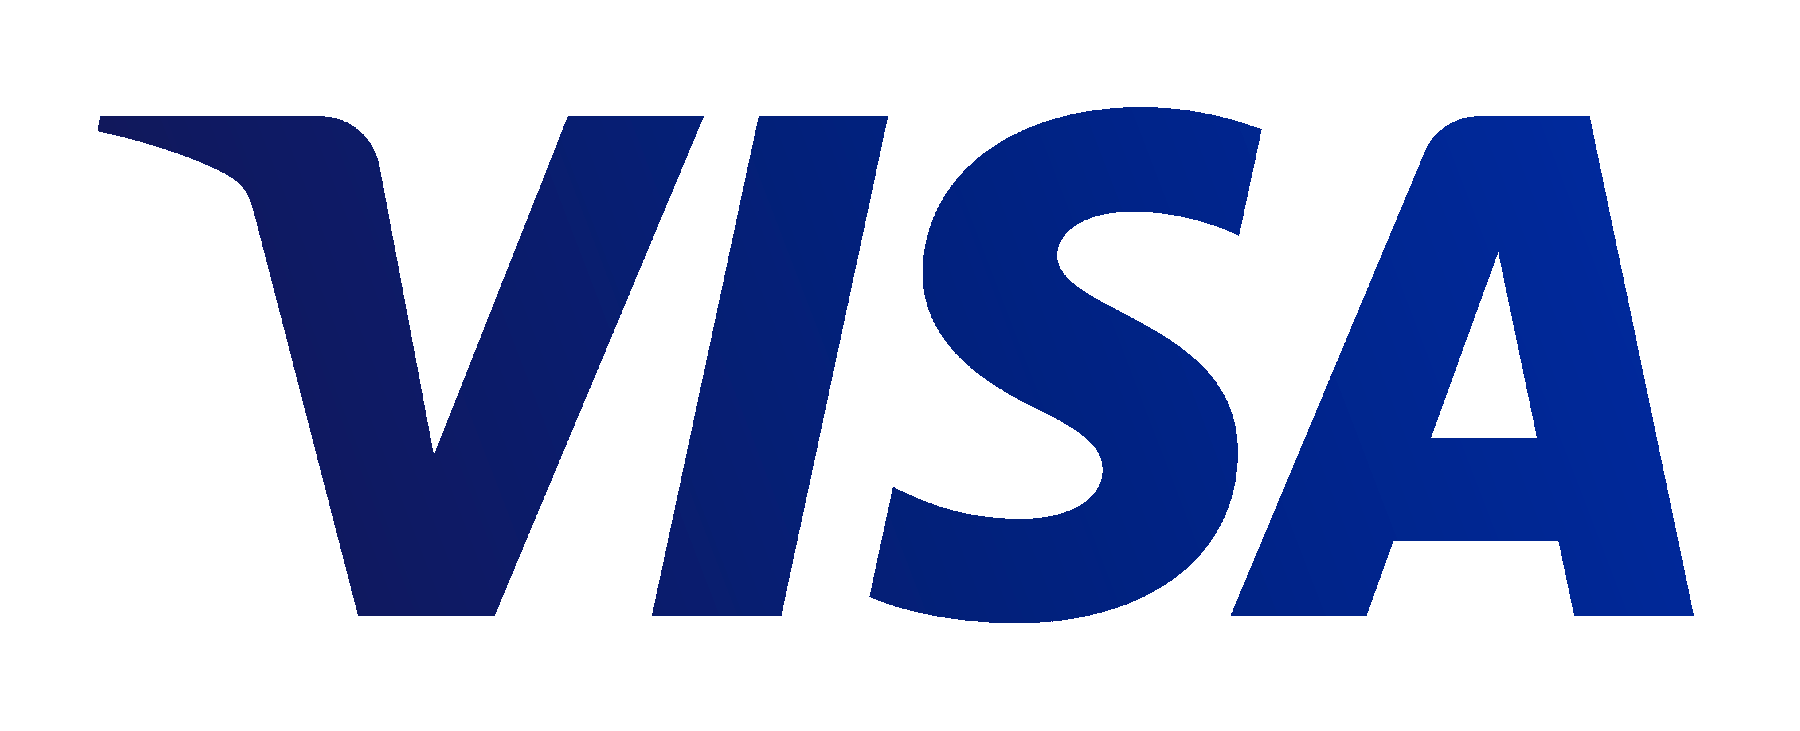 White Visa Logo - Pluspng